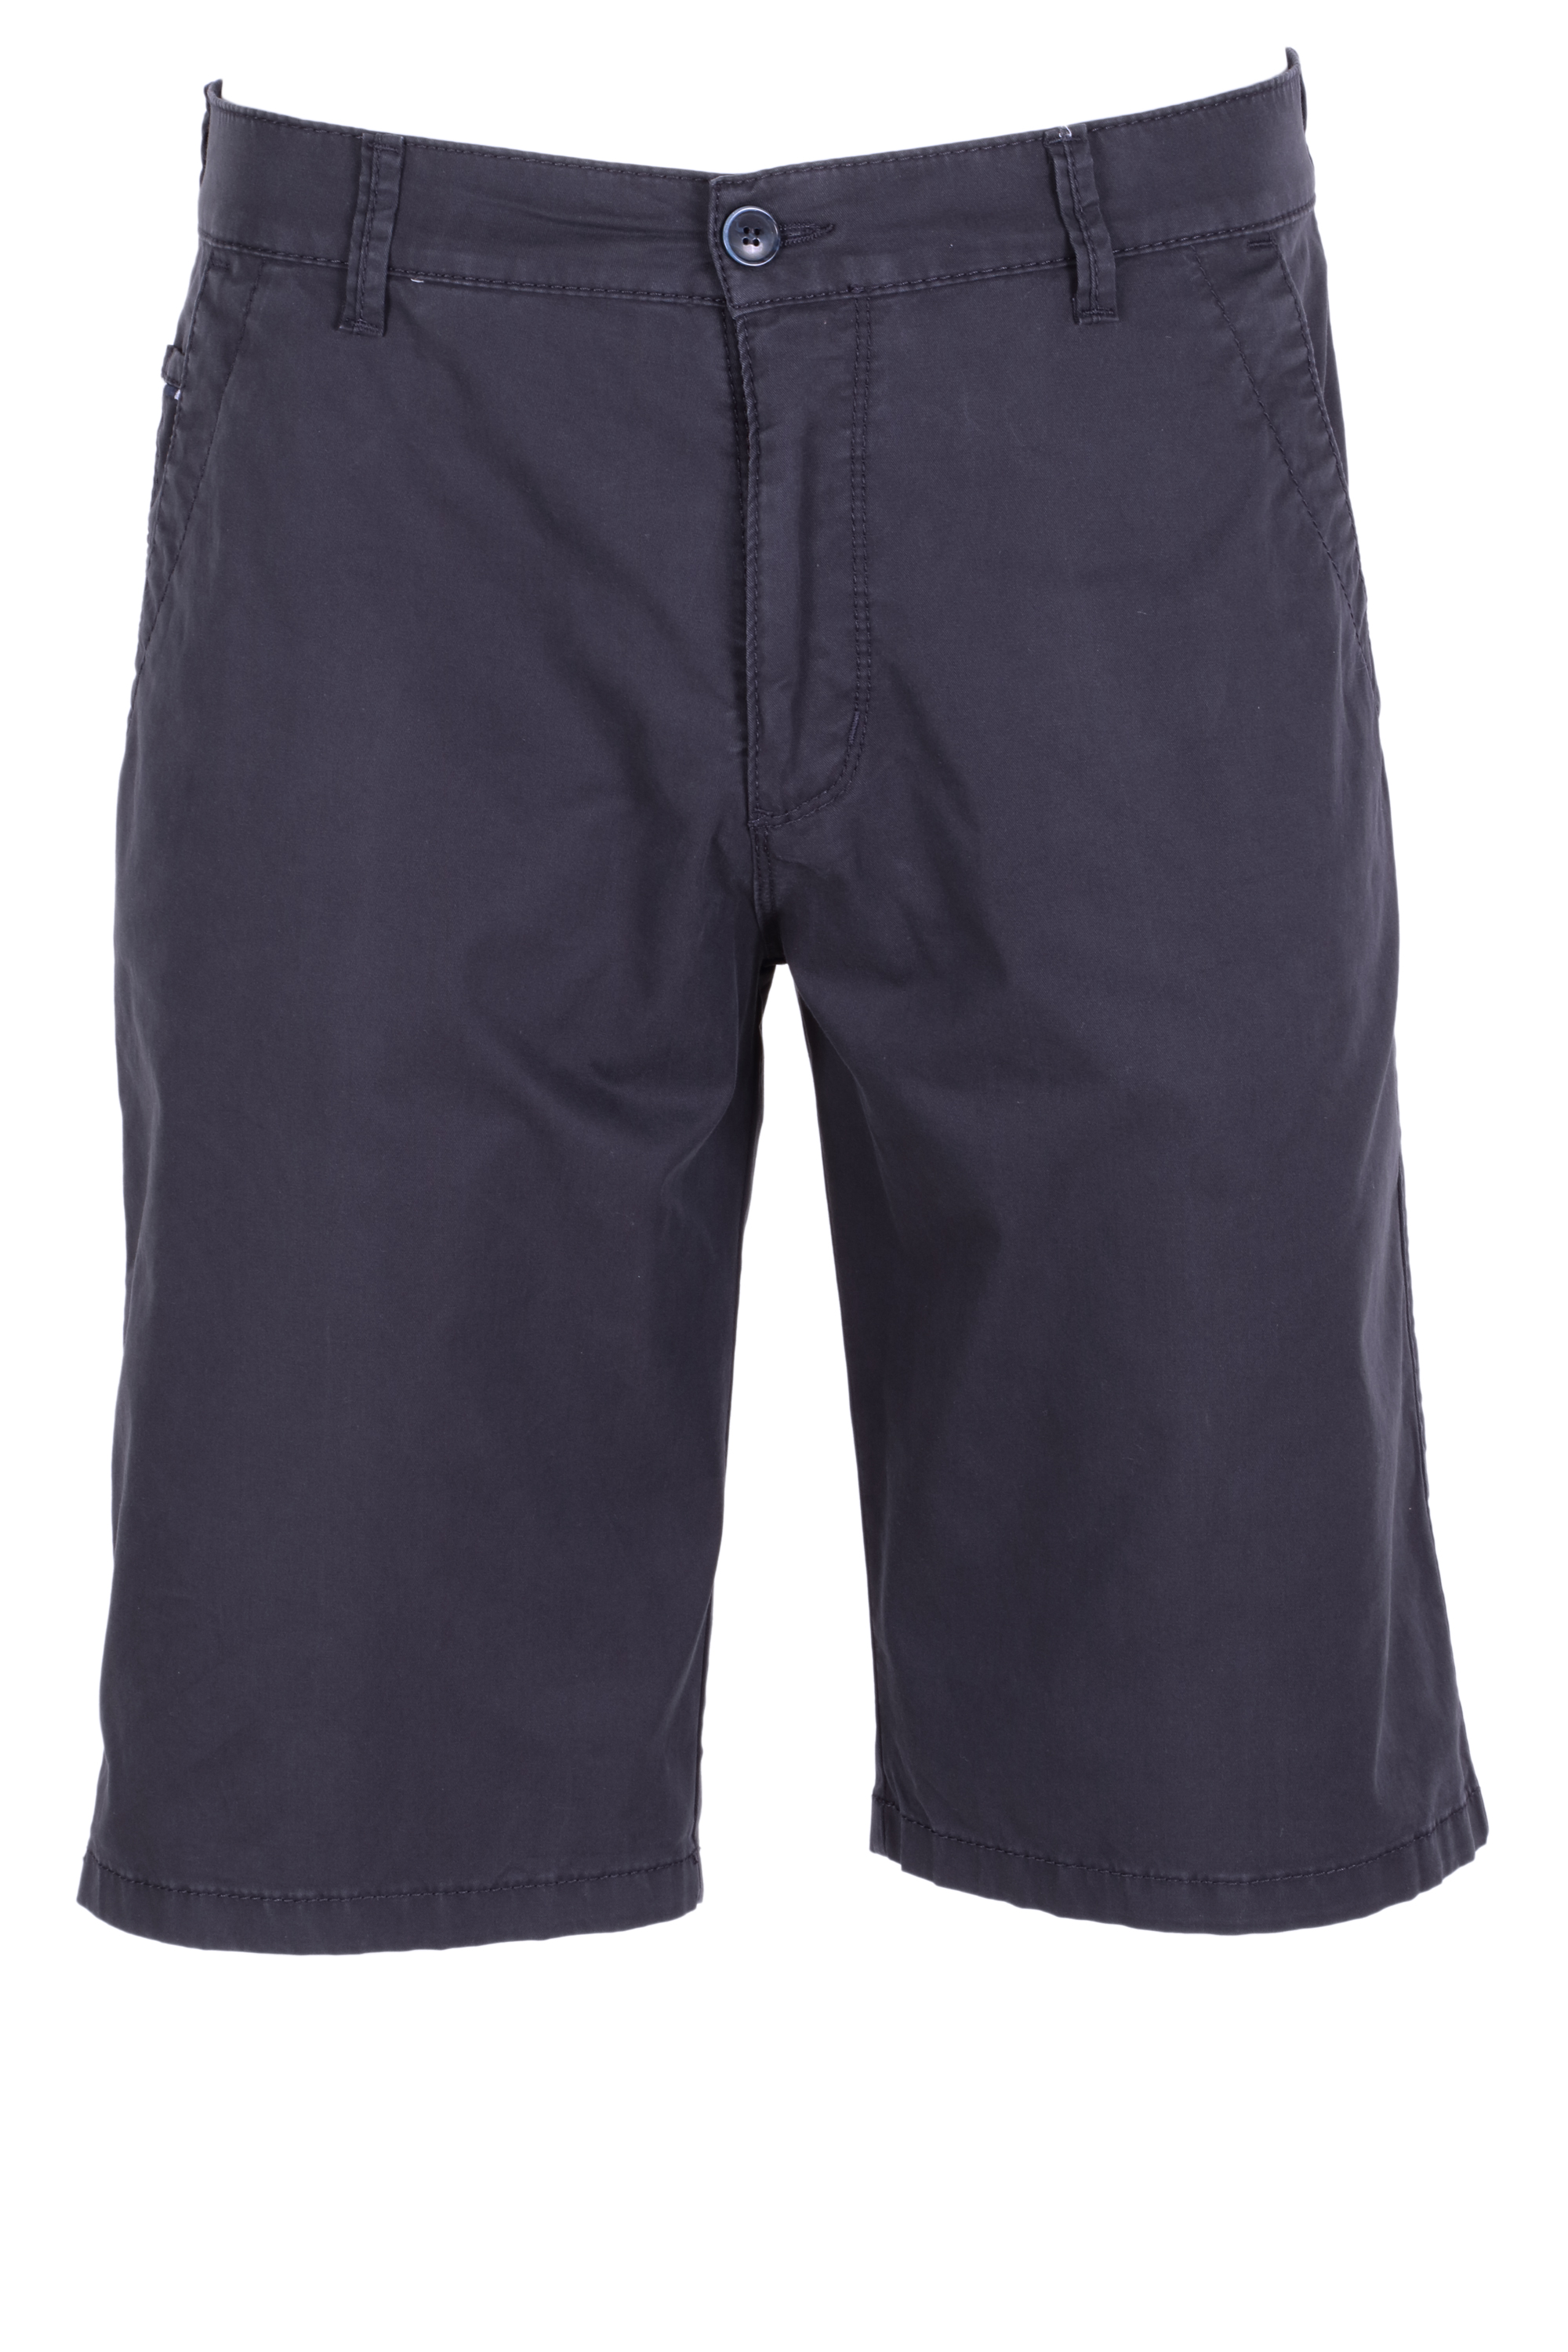 Pioneer Herren Chino Shorts - dunkelblau 33